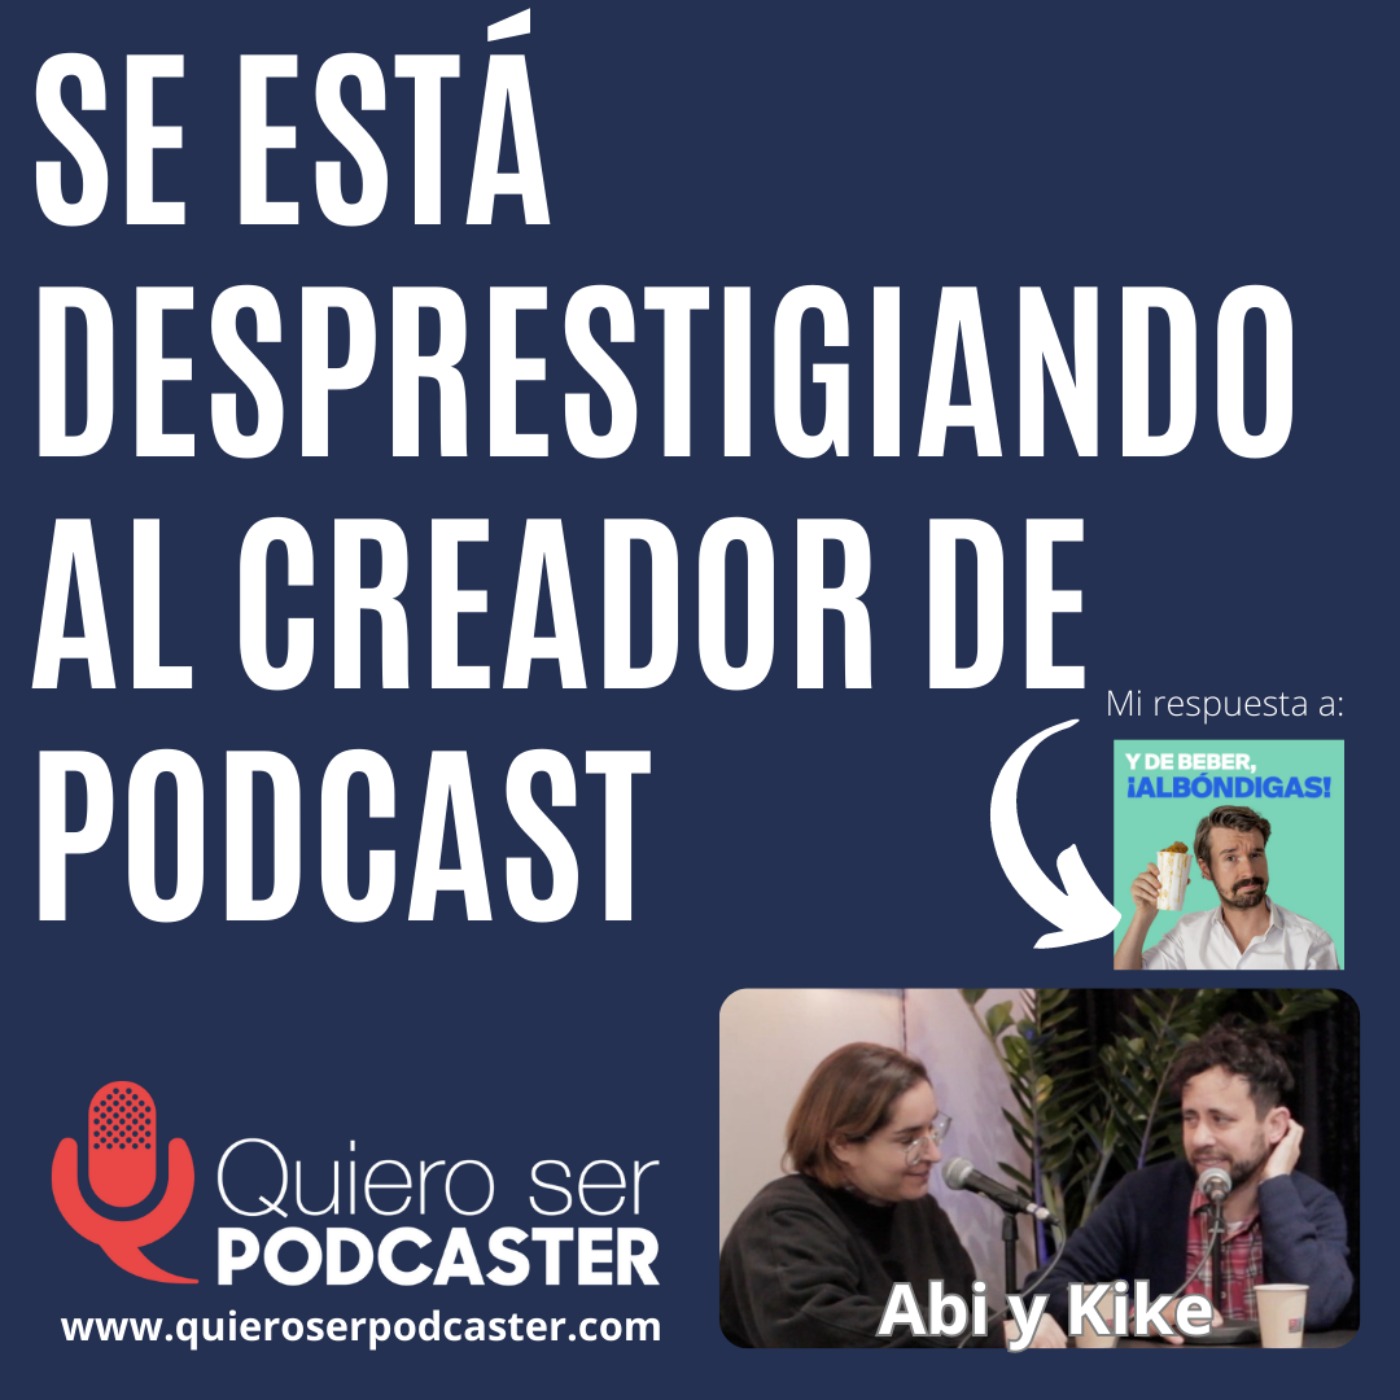 Se está desprestigiando al creador de podcast. Respondiendo a @santialveru @albondigaslate @kikegdelariva  y  @Zlonk de @Lallamastore